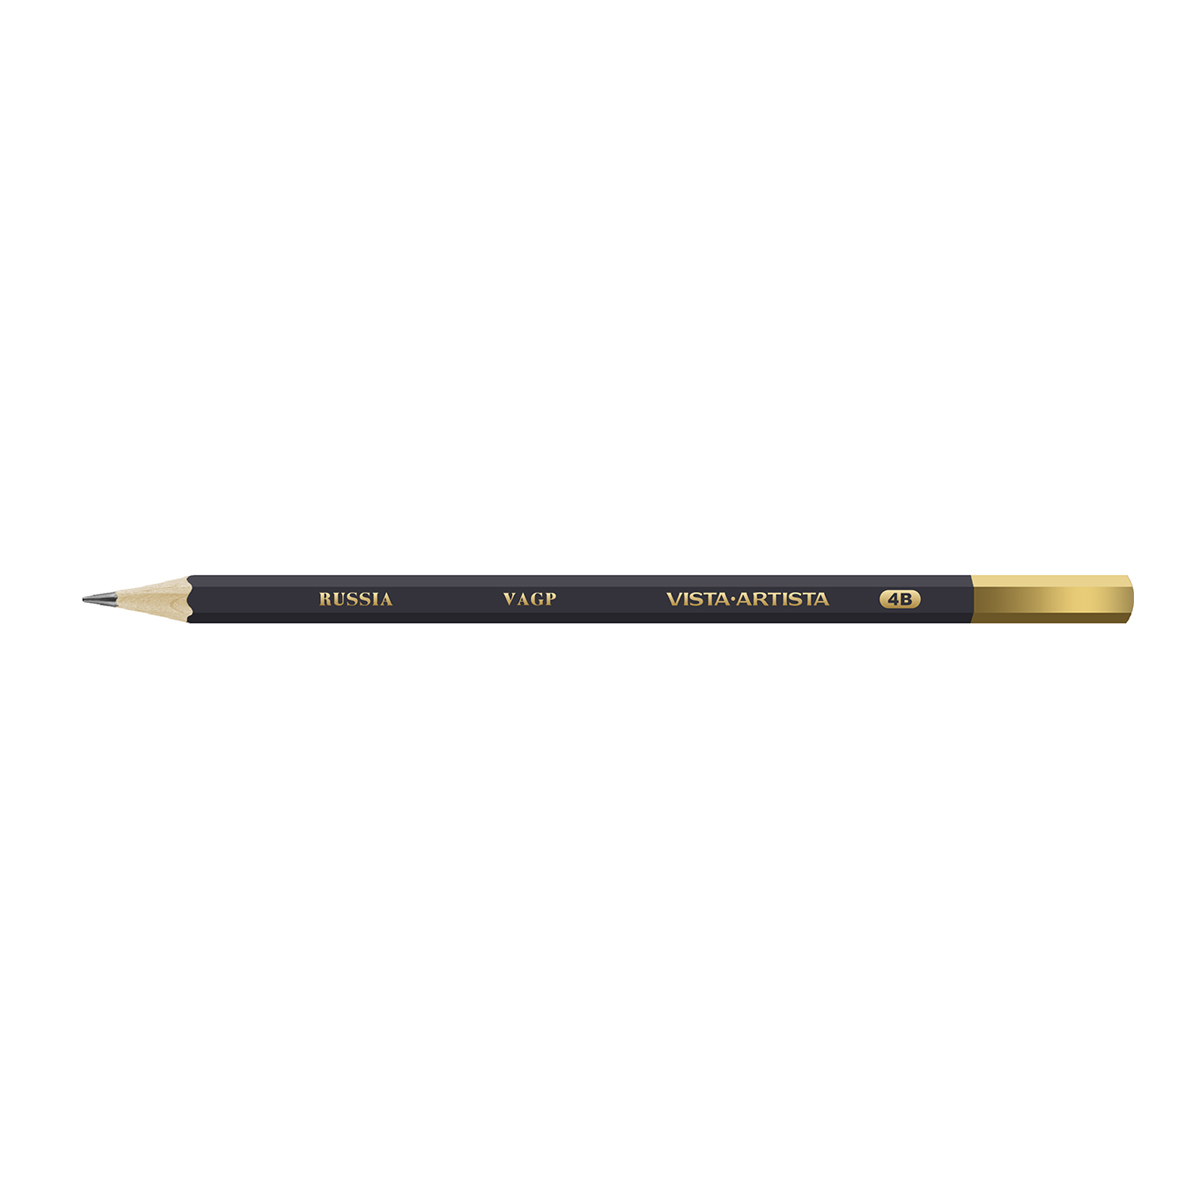 VISTA-ARTISTA VAGP Чернографитный карандаш заточенный 4М (4B) . Фото 1.